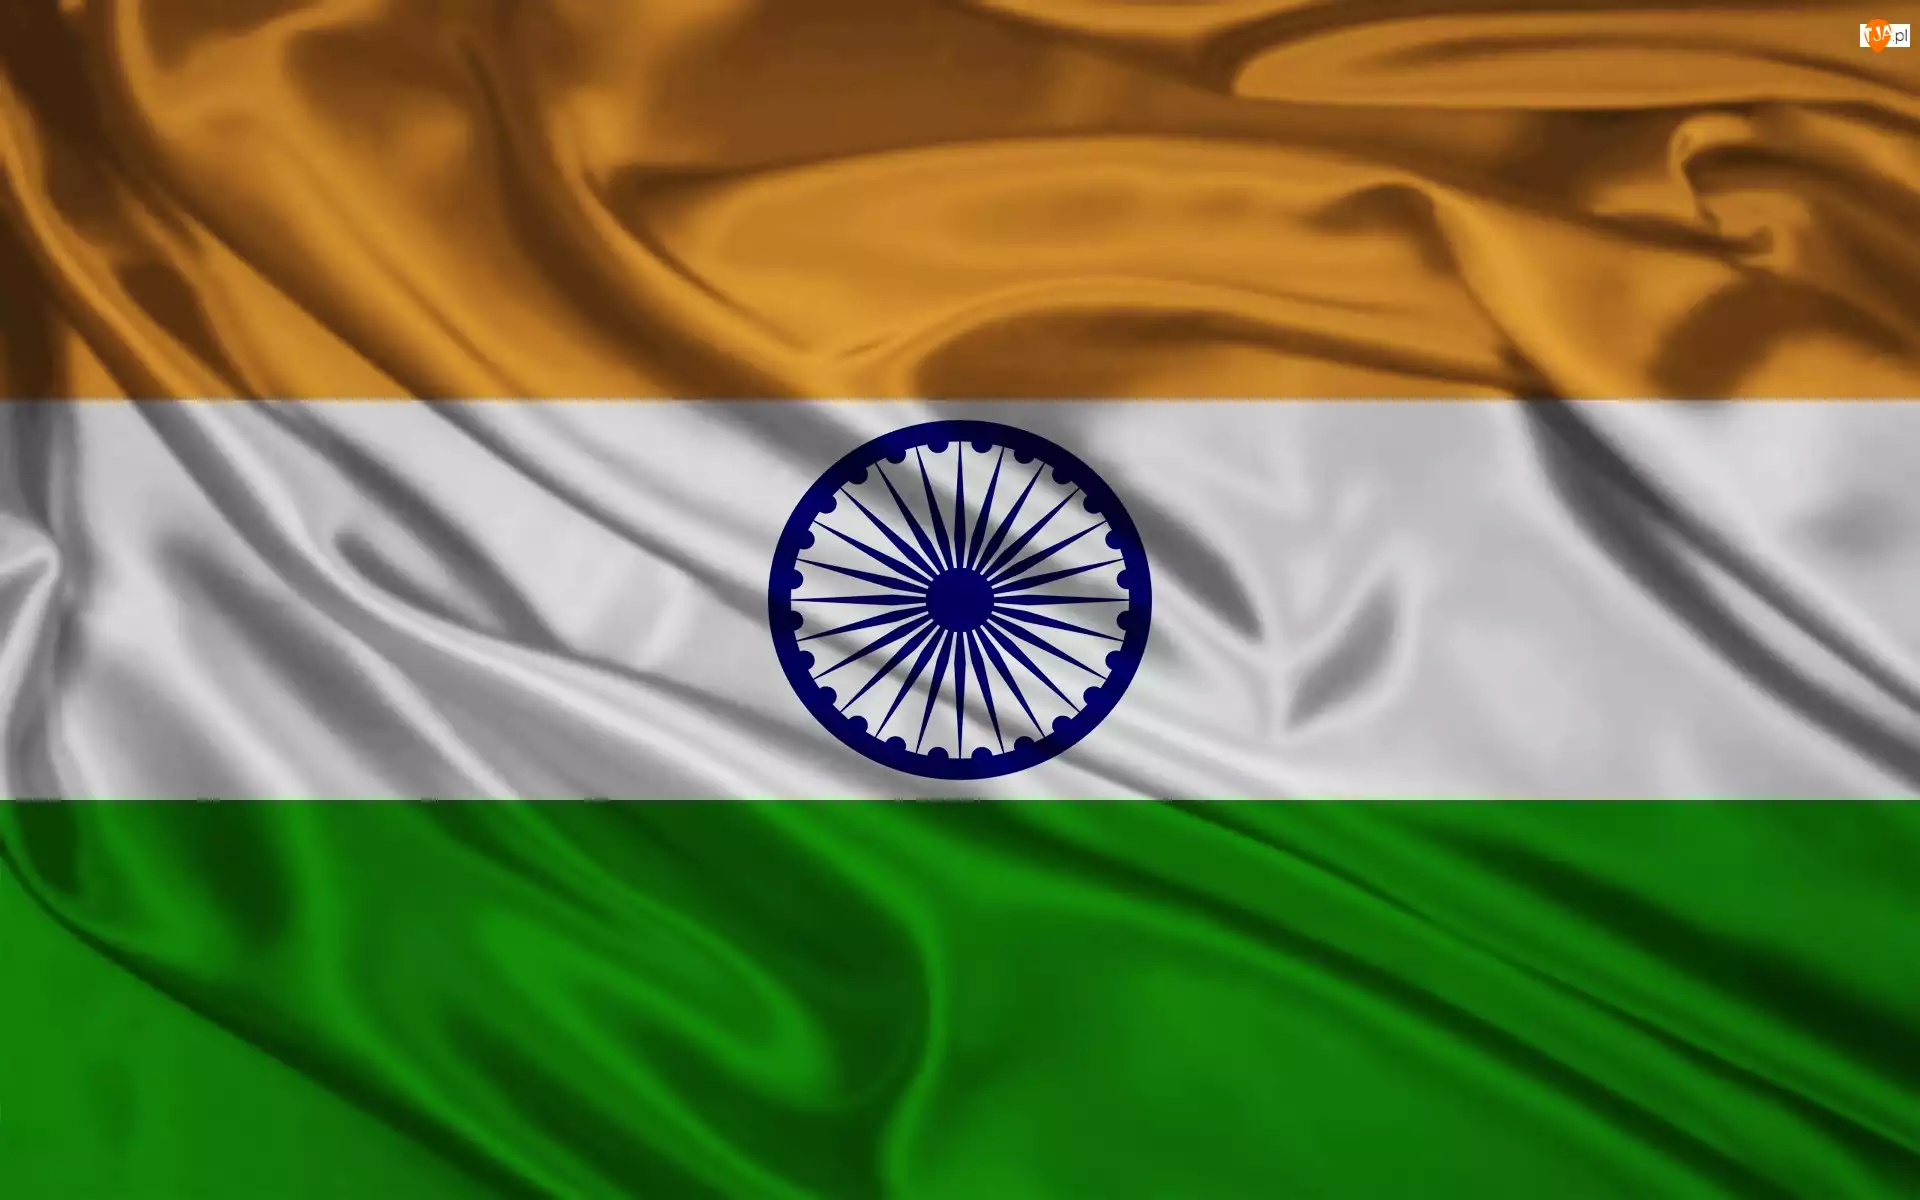 Flaga, Indii